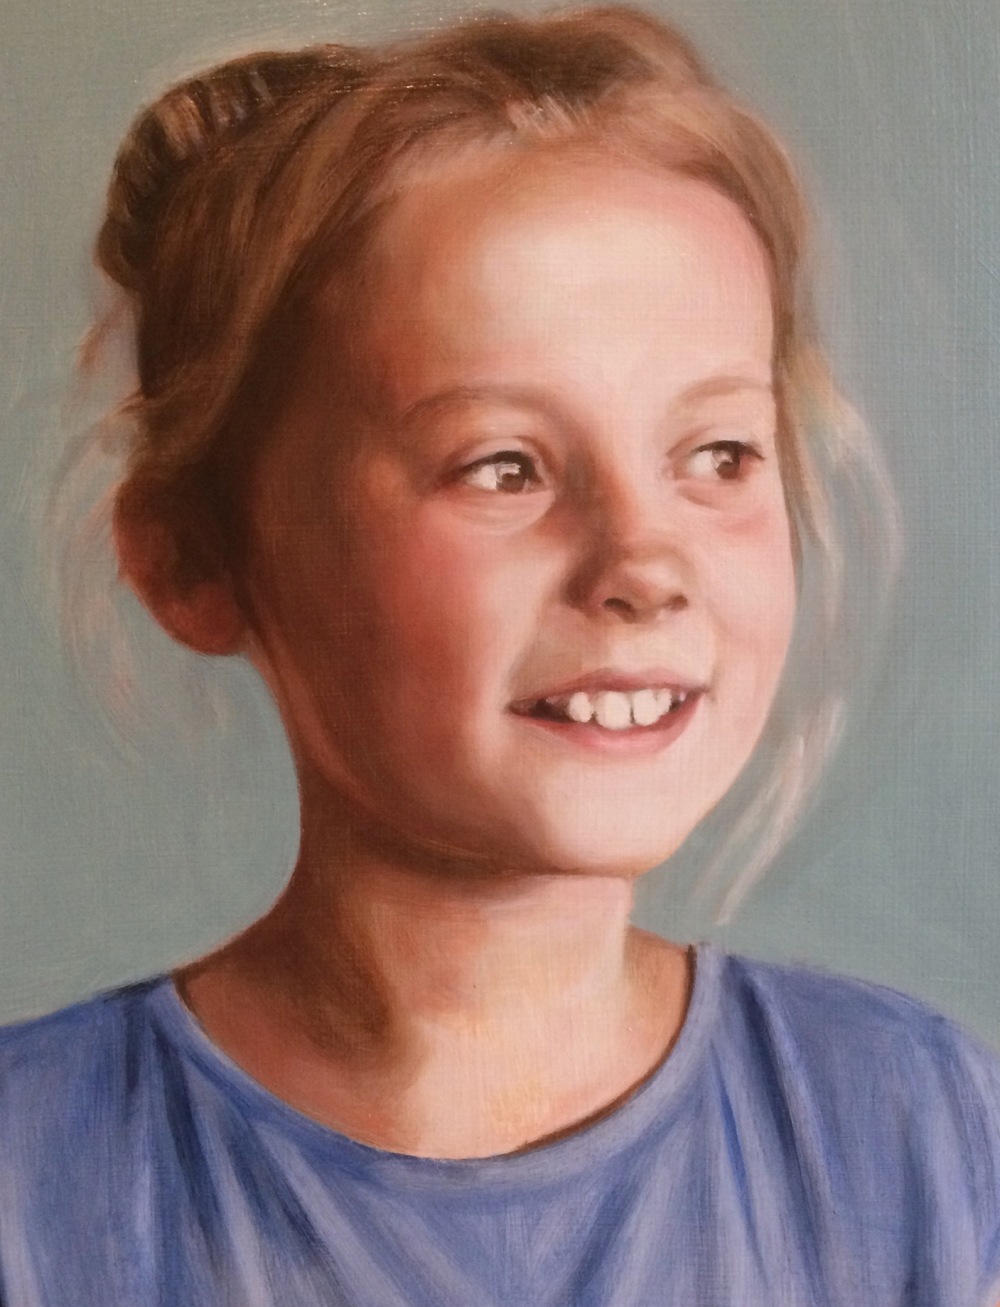 3rd oil glaze on a grisaille portrait, from a portrait painting commission by British portrait painter Matt Harvey